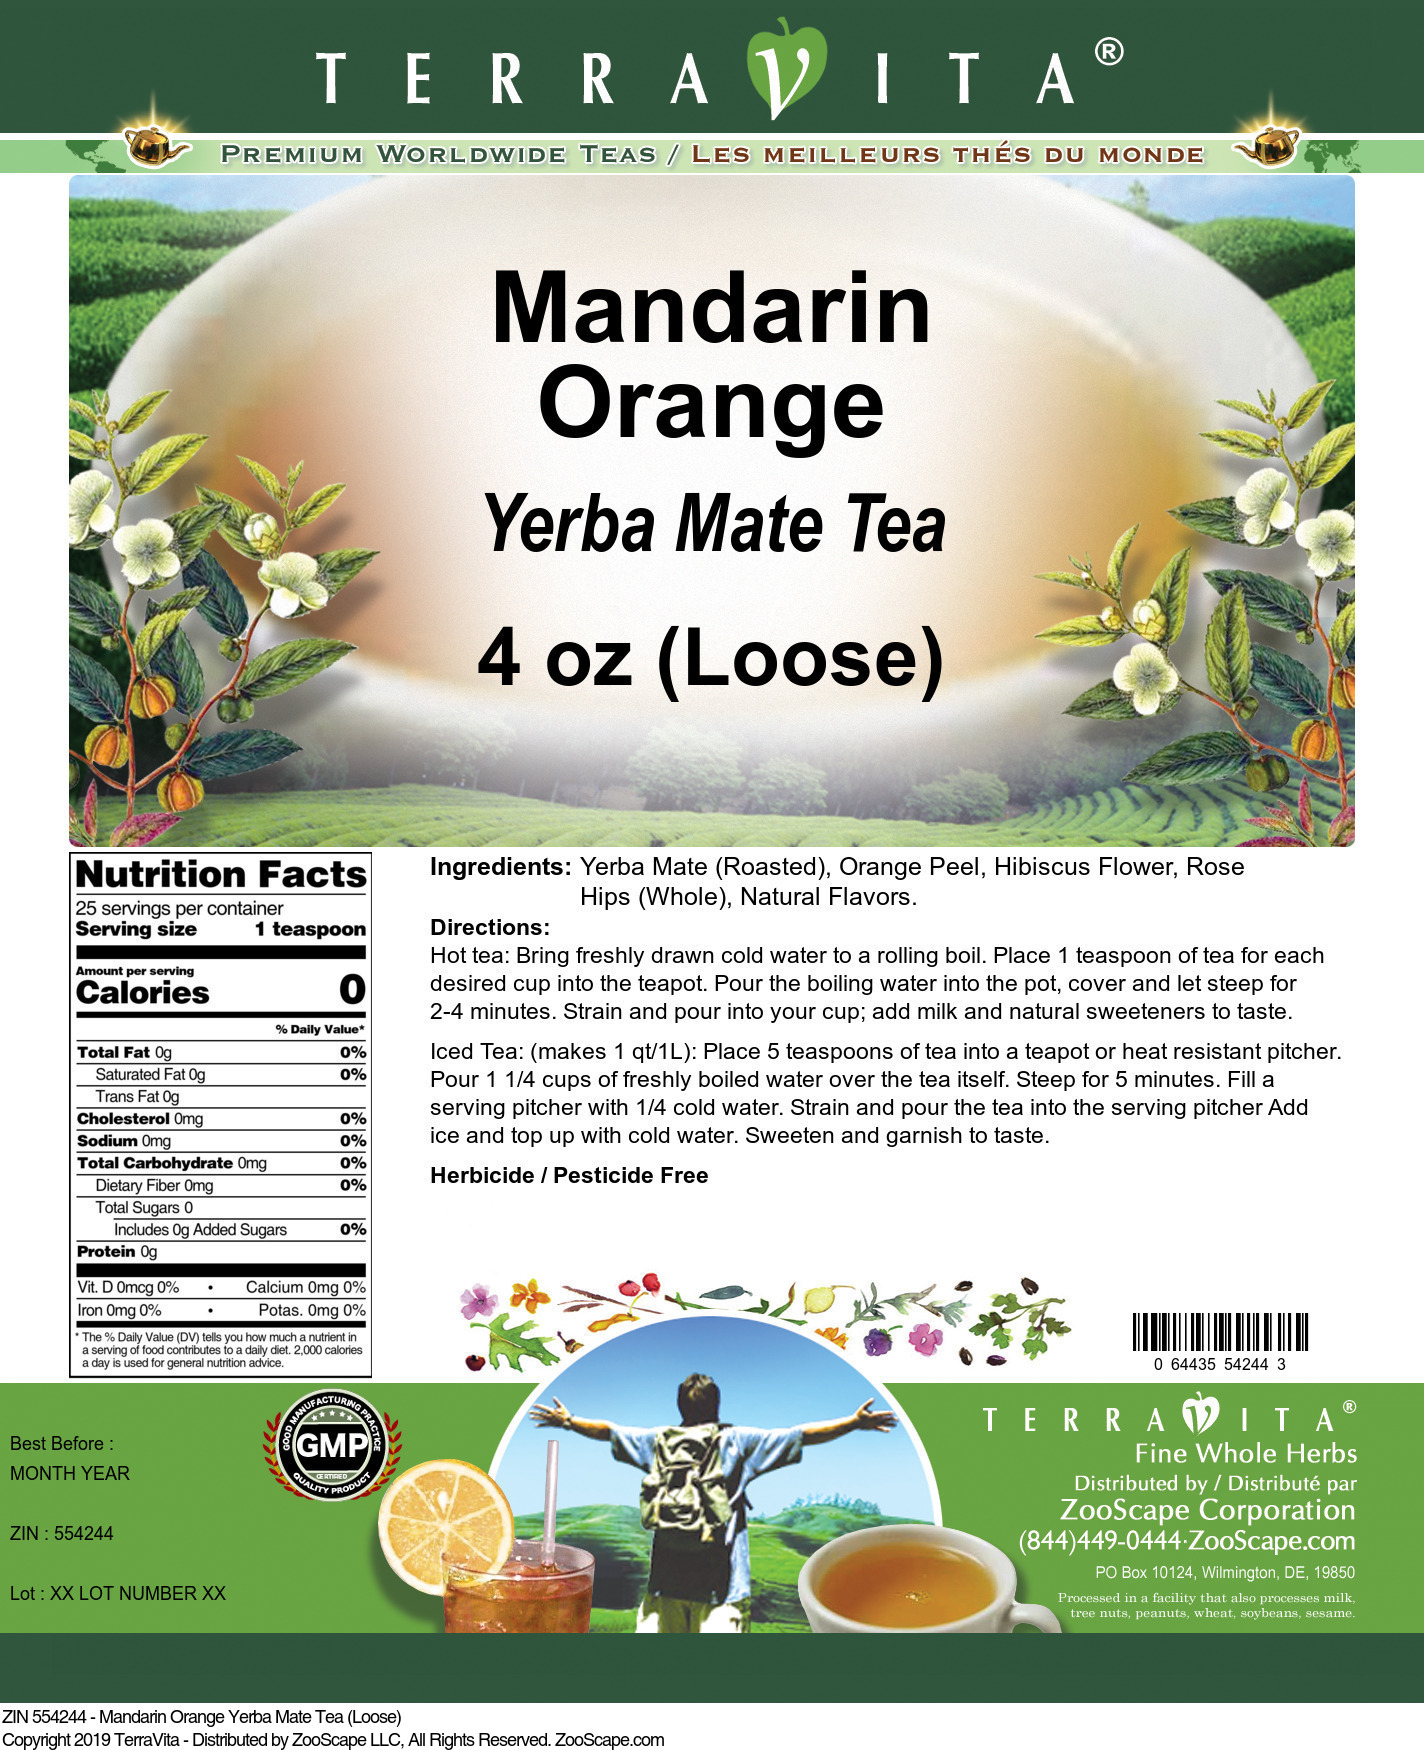 Mandarin Orange Yerba Mate Tea (Loose) - Label